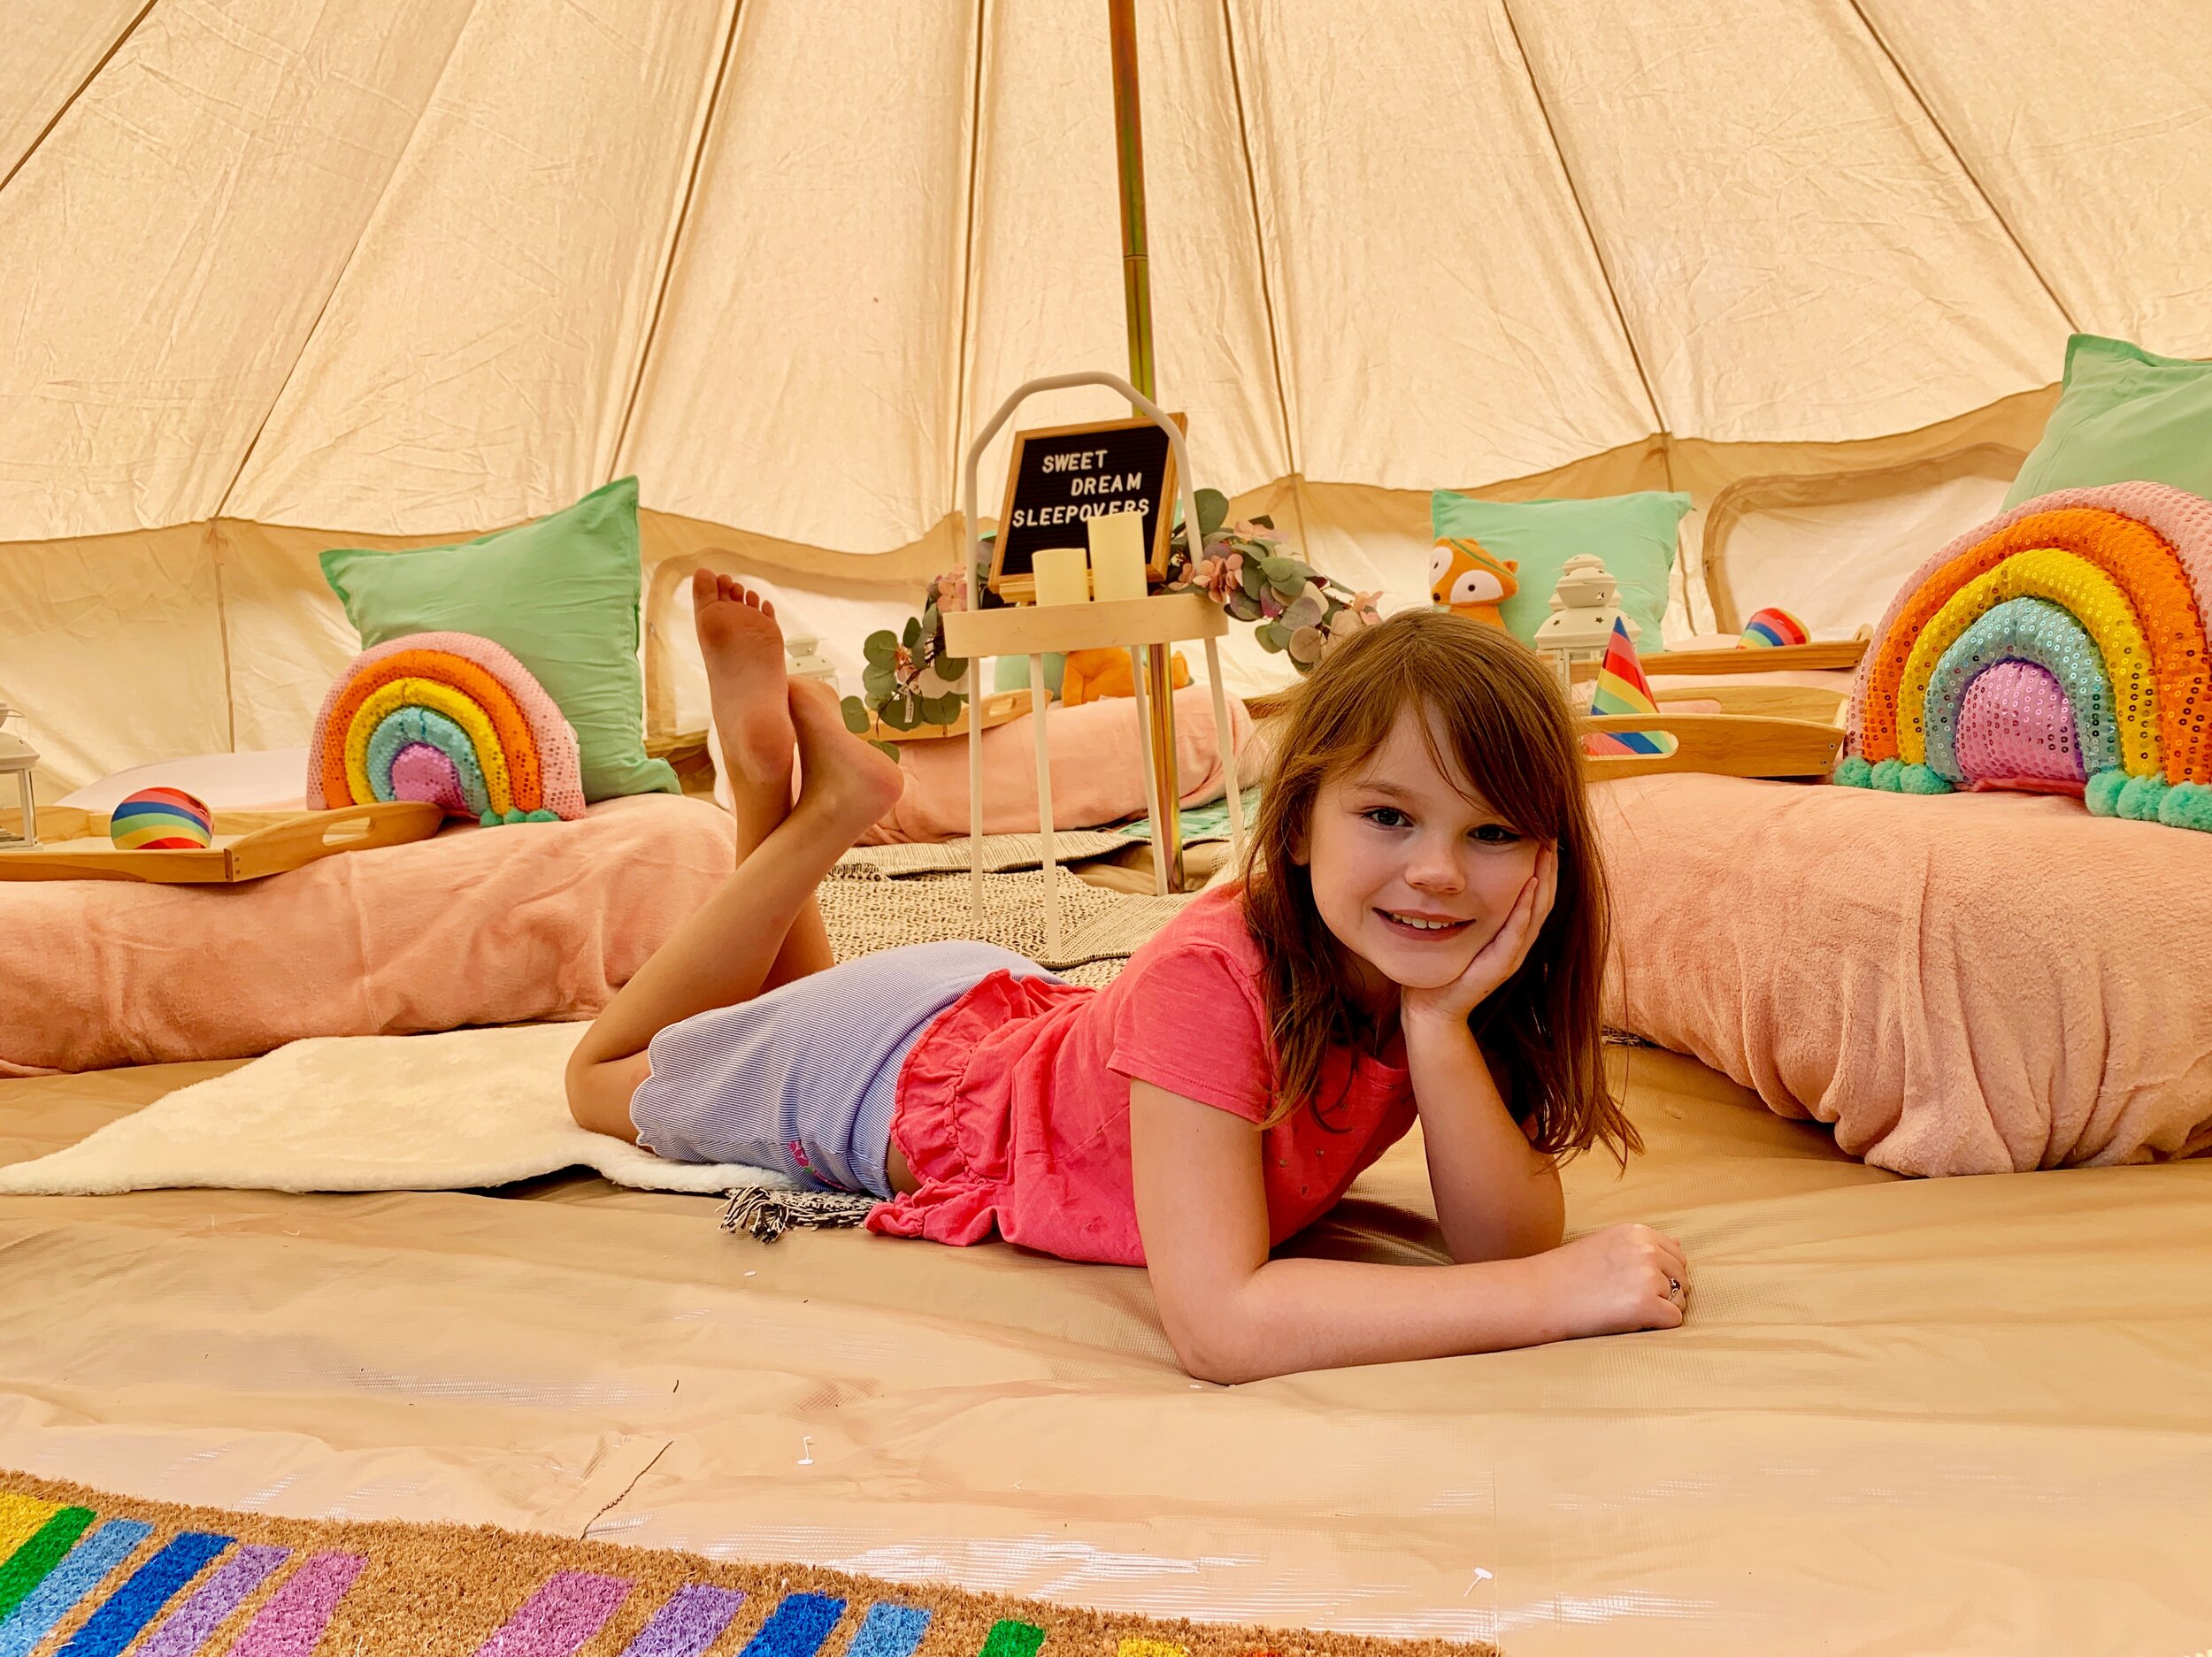 Sleepover Party Tent Rentals for Kids – sweet mitten dreams